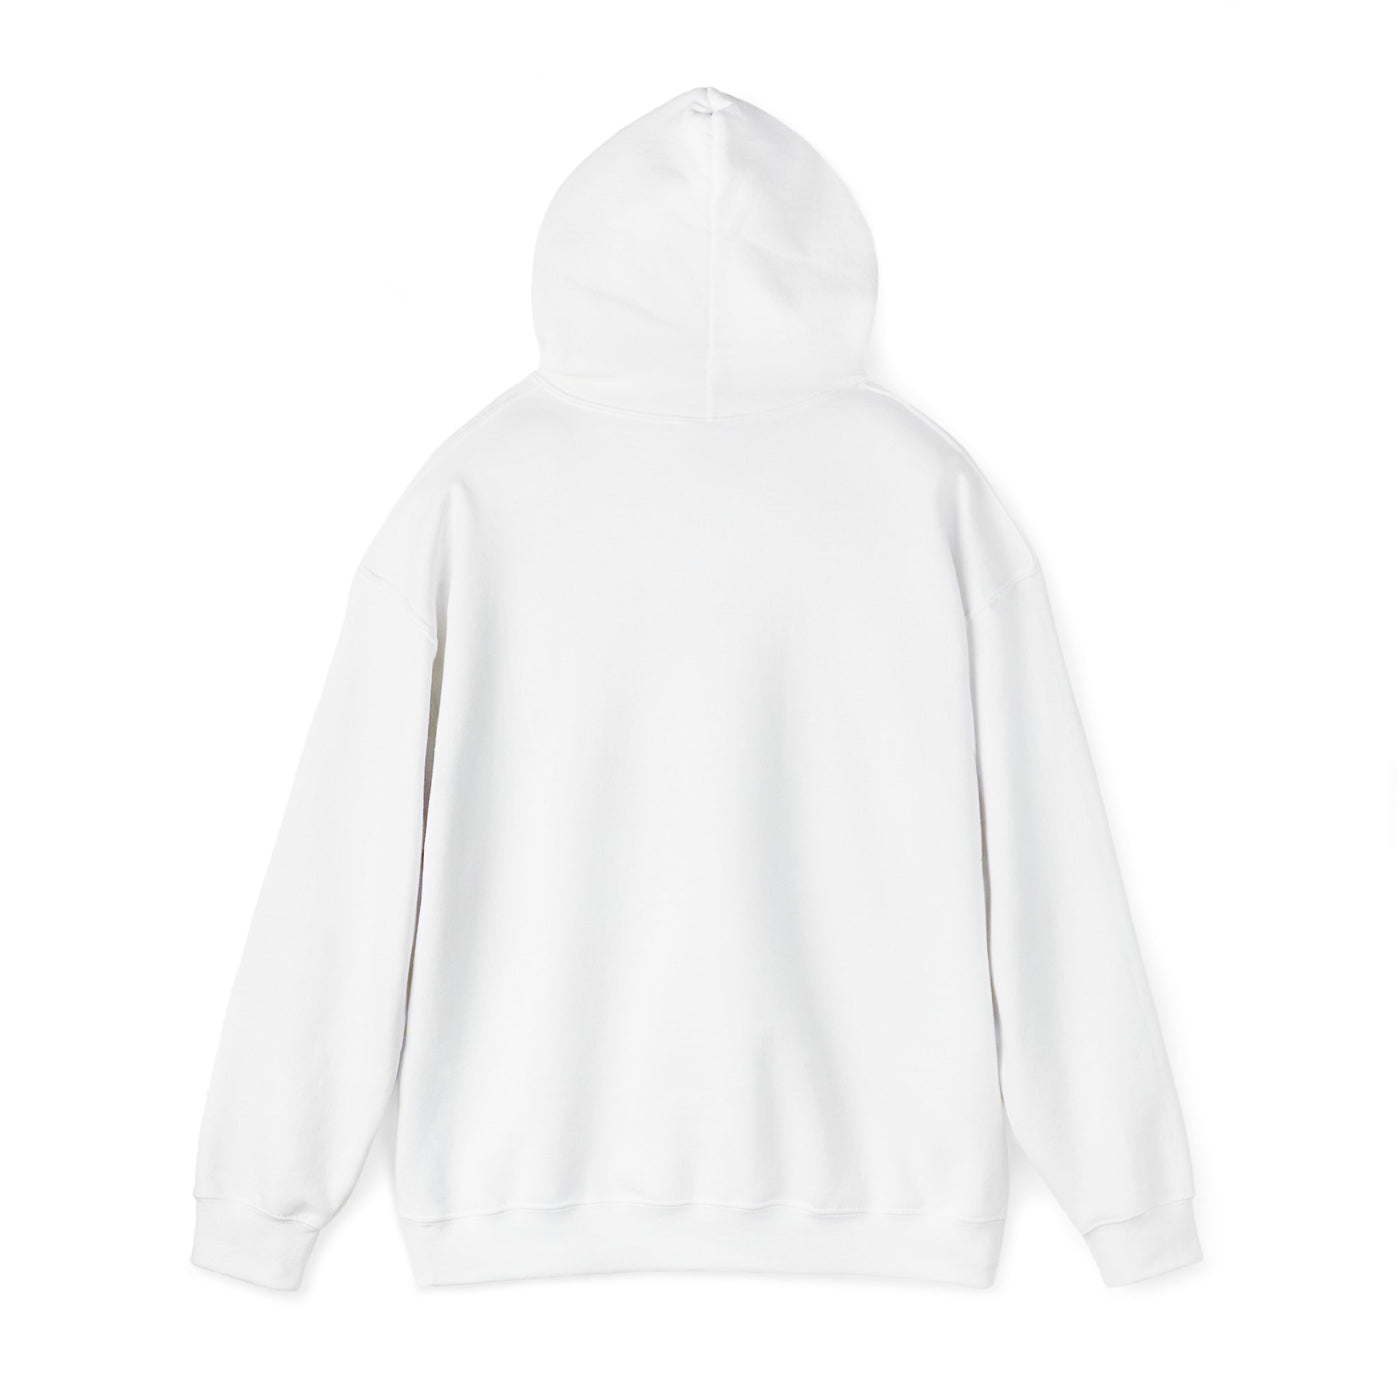 VEGGIE PRIDE Unisex Heavy Blend™ Hooded Sweatshirt